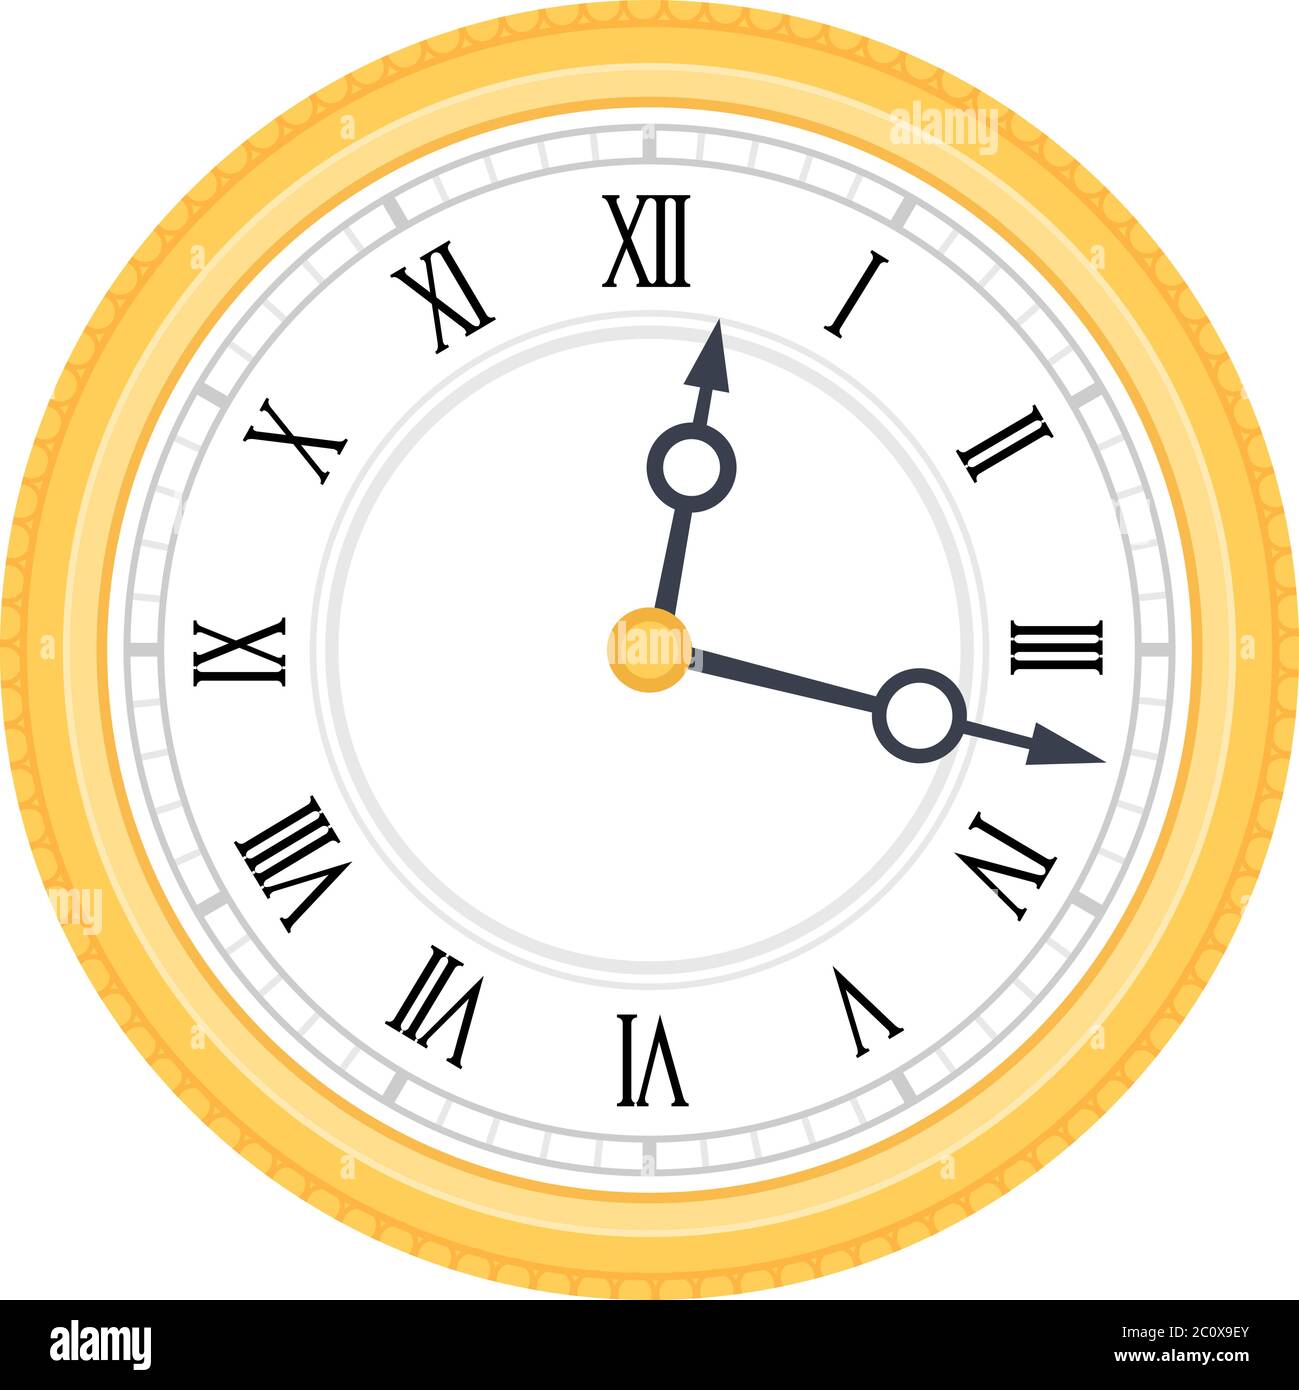 Uhr mit römischen Ziffern Vektor-Symbol flach isoliert Stock Vektor